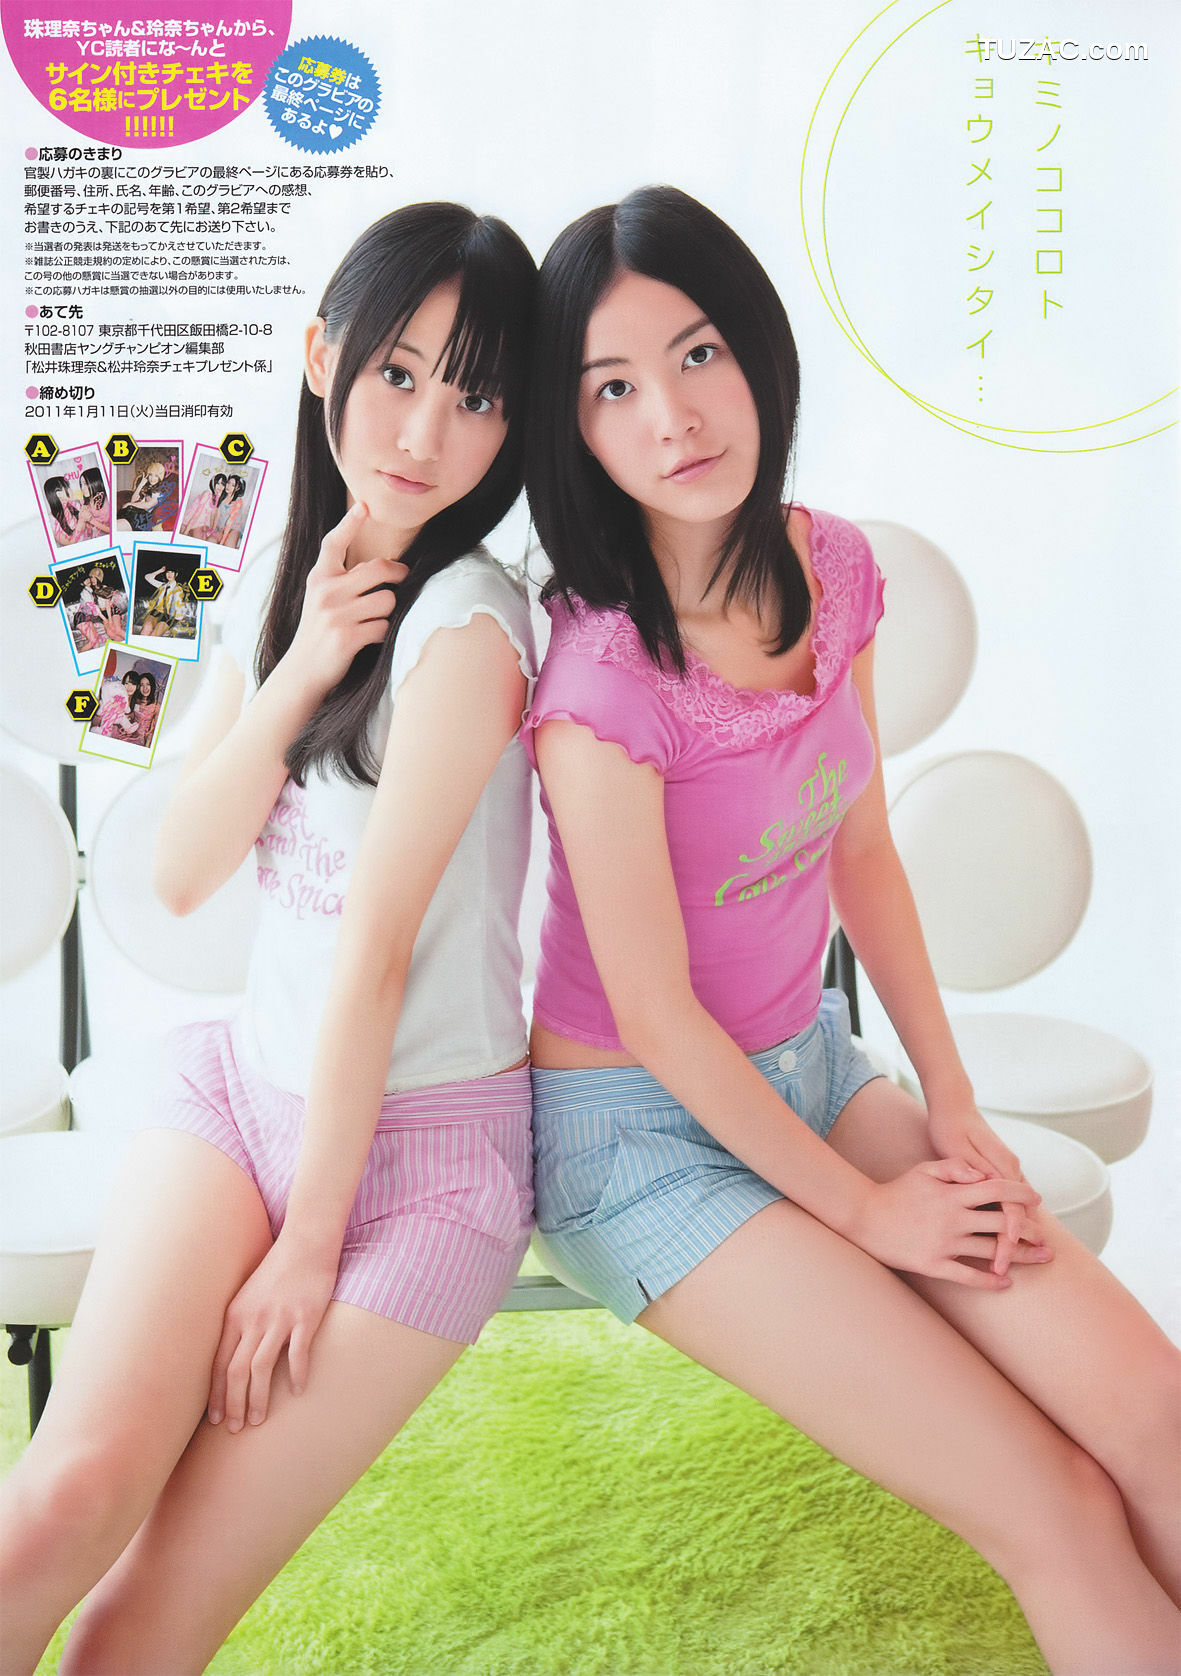 Young Champion杂志写真_ 松井玲奈 松井珠理奈 2011年No.02 写真杂志[14P]